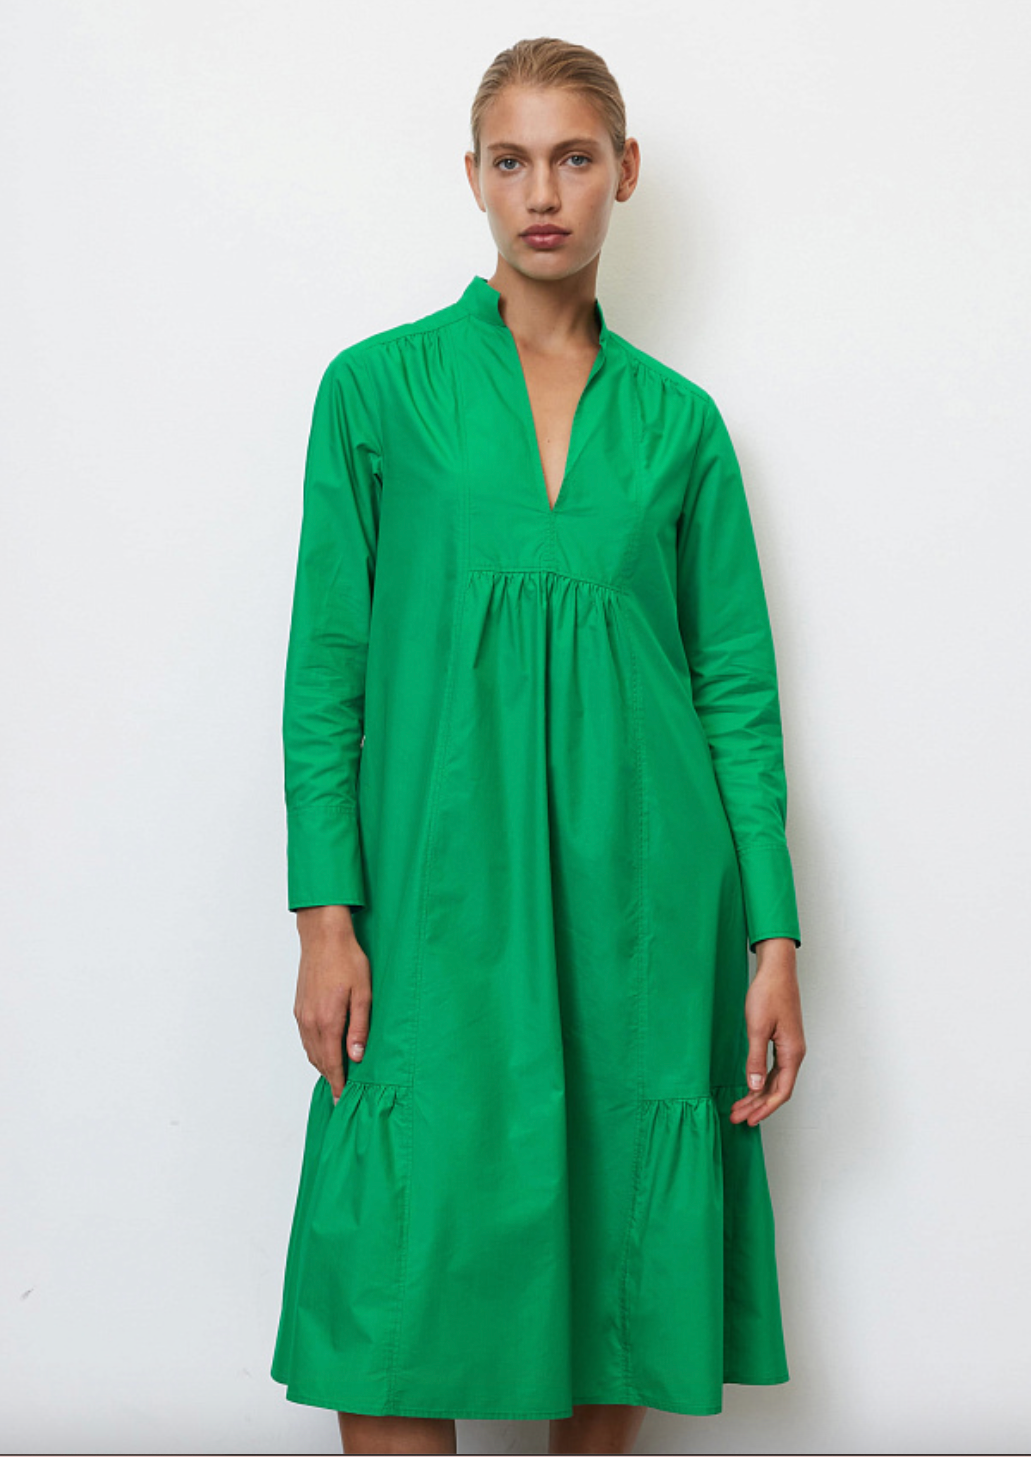 Как носить ярко-зеленый цвет — самый модный в этом сезоне